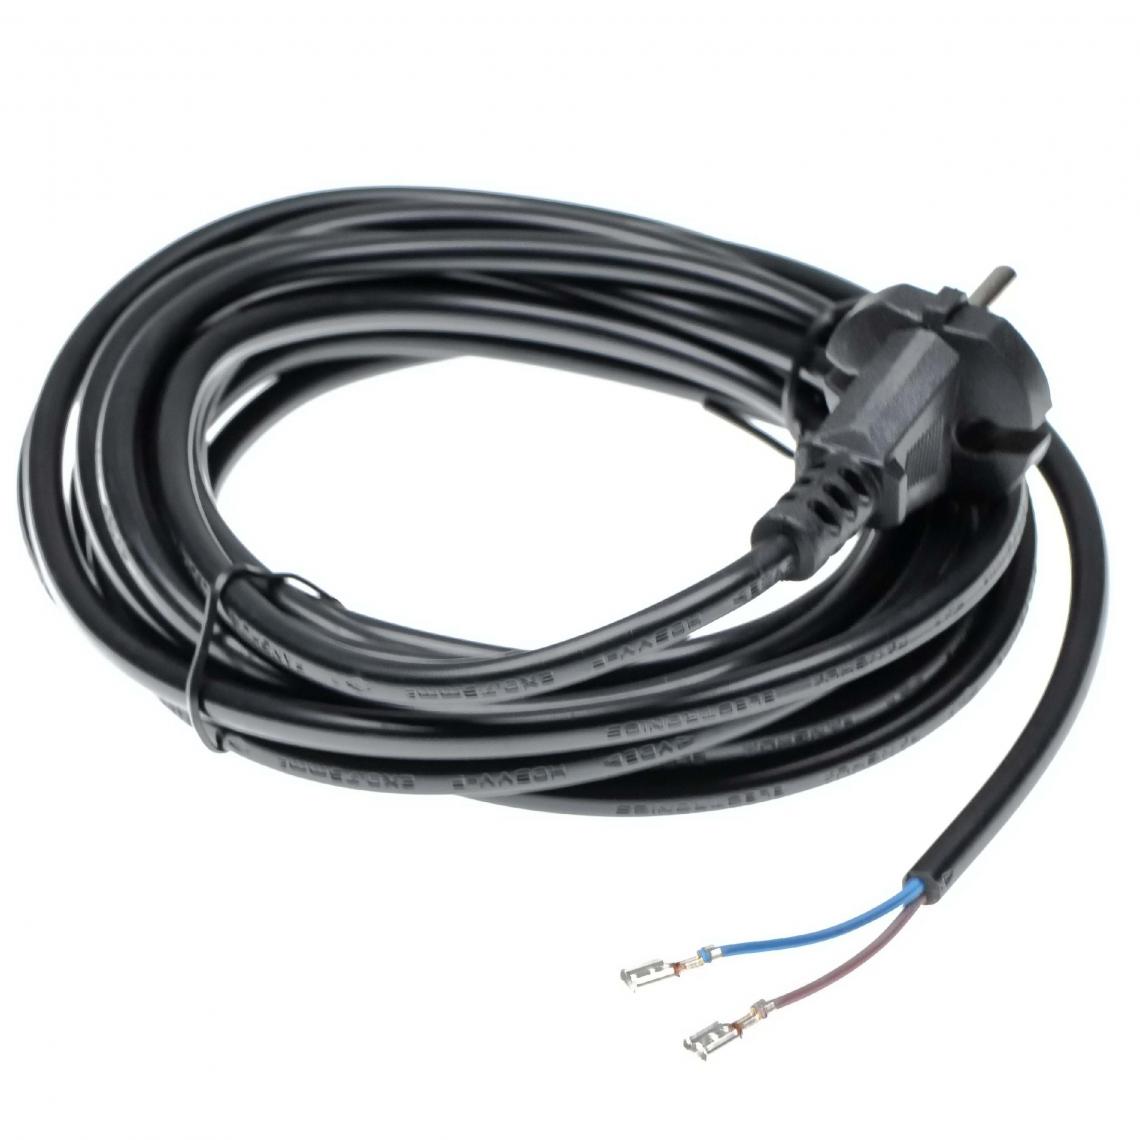 Vhbw - vhbw Câble électrique compatible avec Kärcher A2501, A2654, NT27/1, NT301, NT35/1, NT360 aspirateurs - 6 m, 4000 W - Accessoire entretien des sols